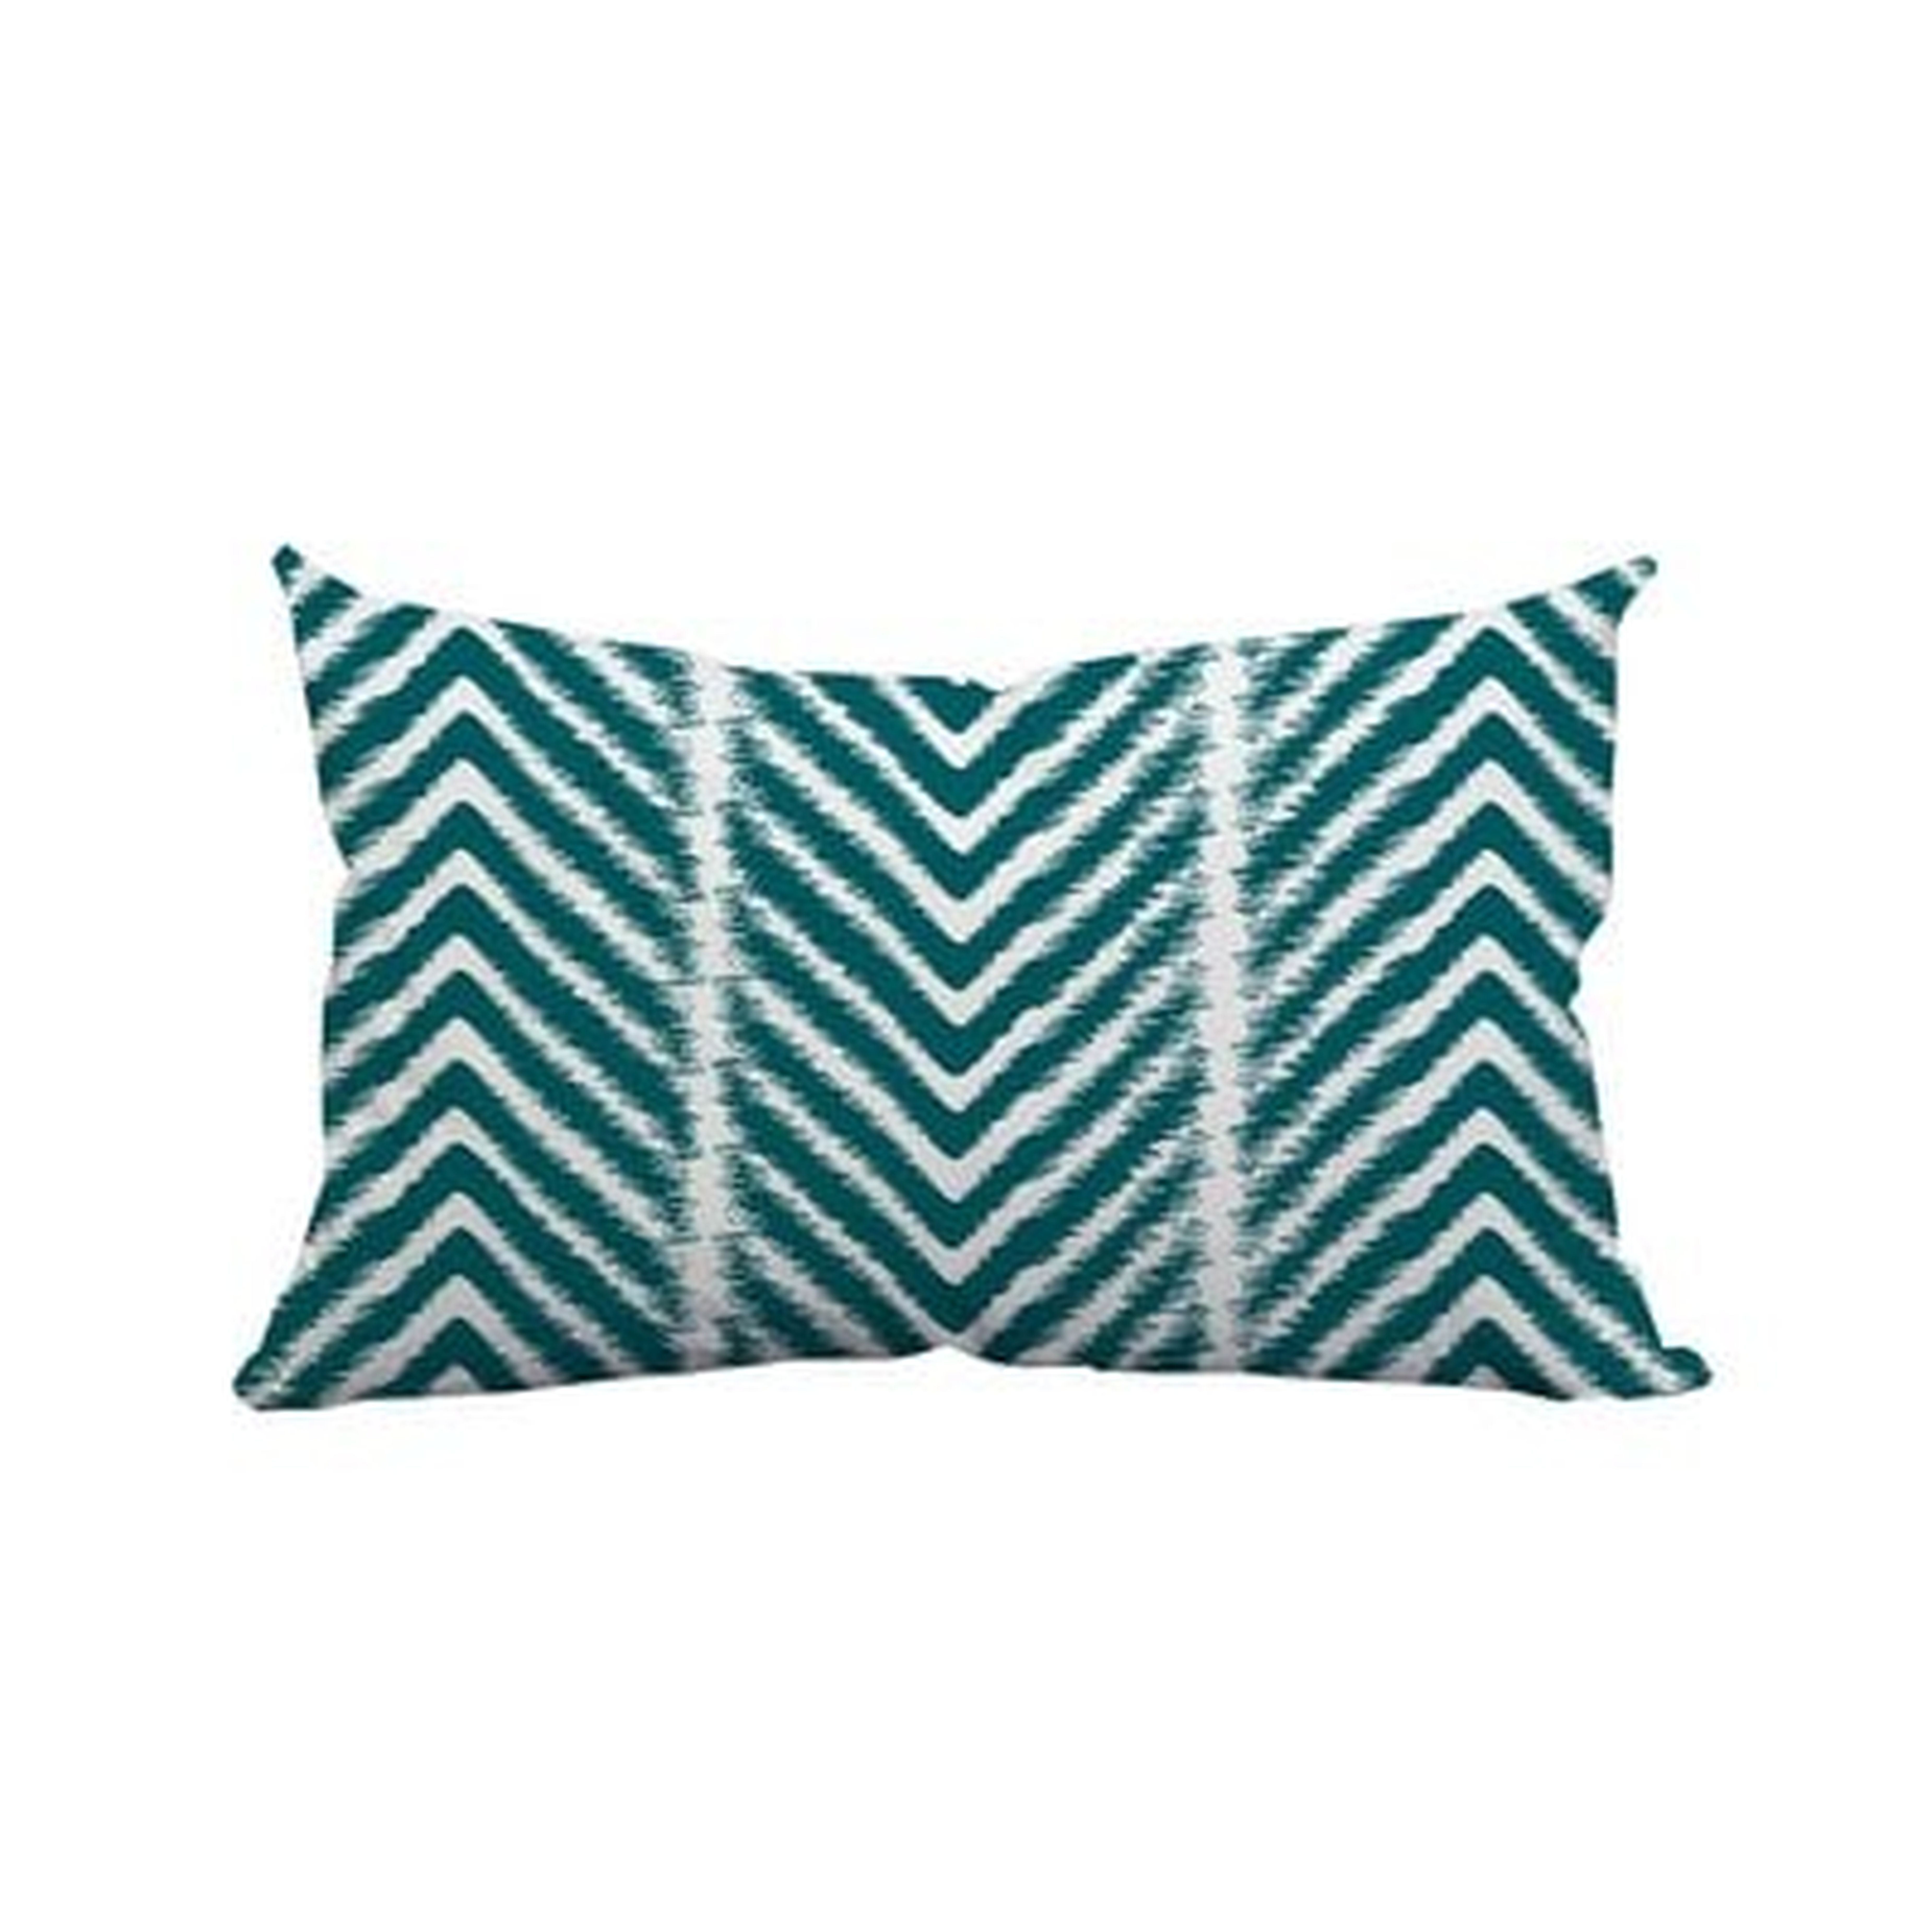 Prestridge Zebra Chevron Print Indoor/Outdoor Lumbar Pillow // 14"x20" // Insert Included - Wayfair